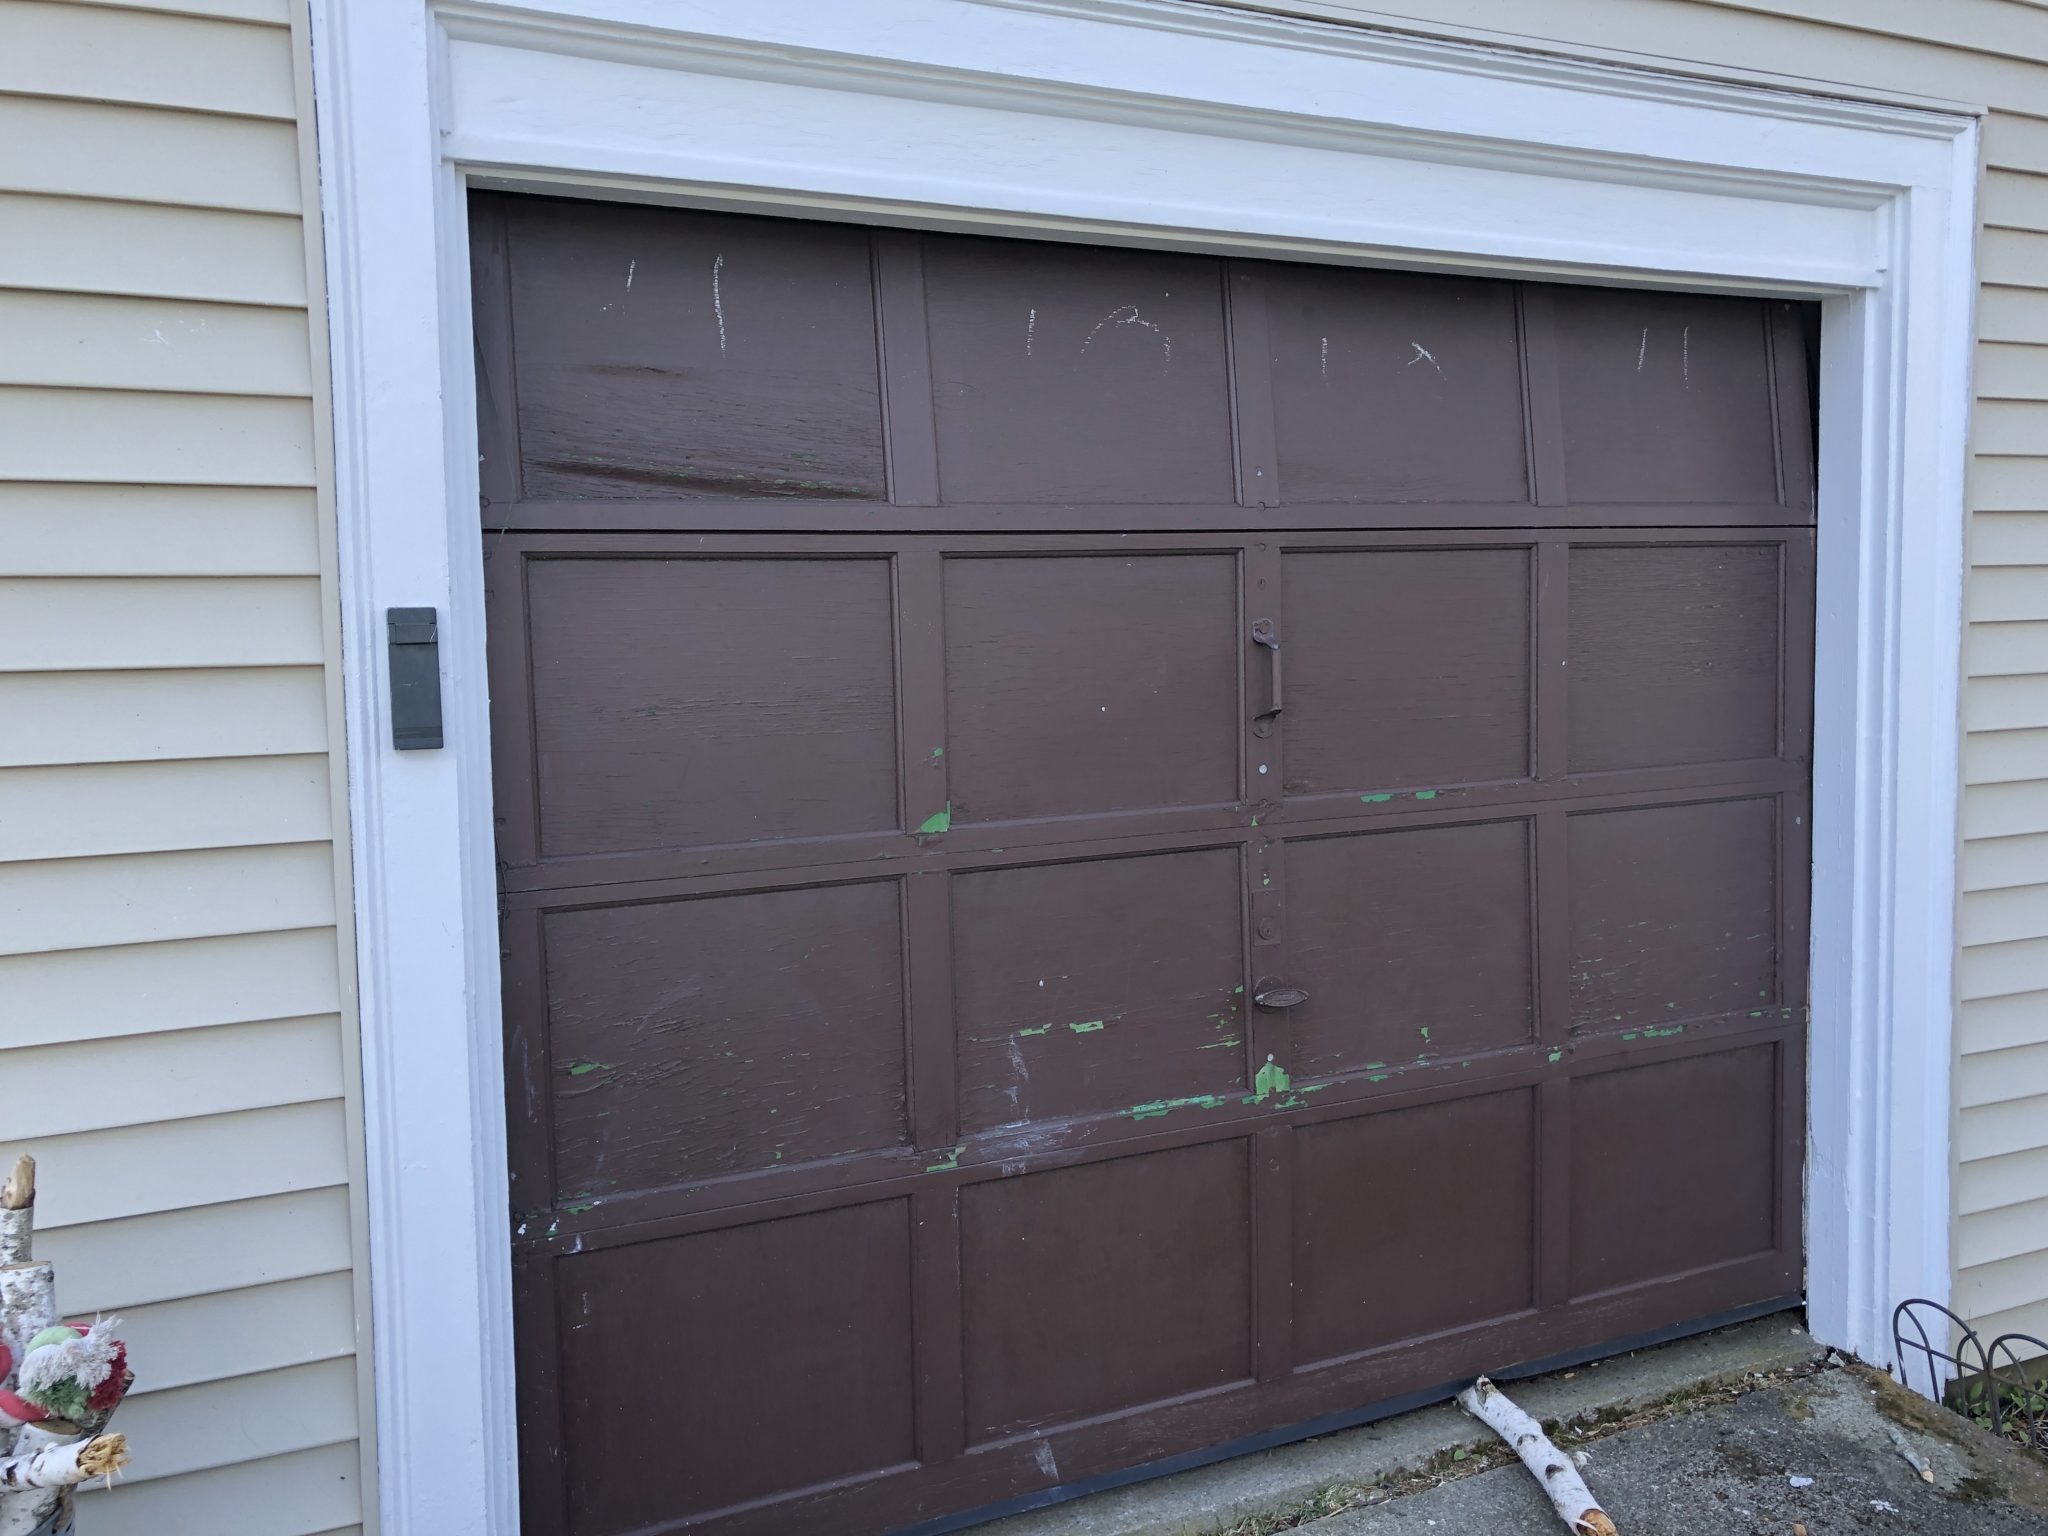 Good Bye Garage Doors O Barn, Build Garage Doors Barn Style